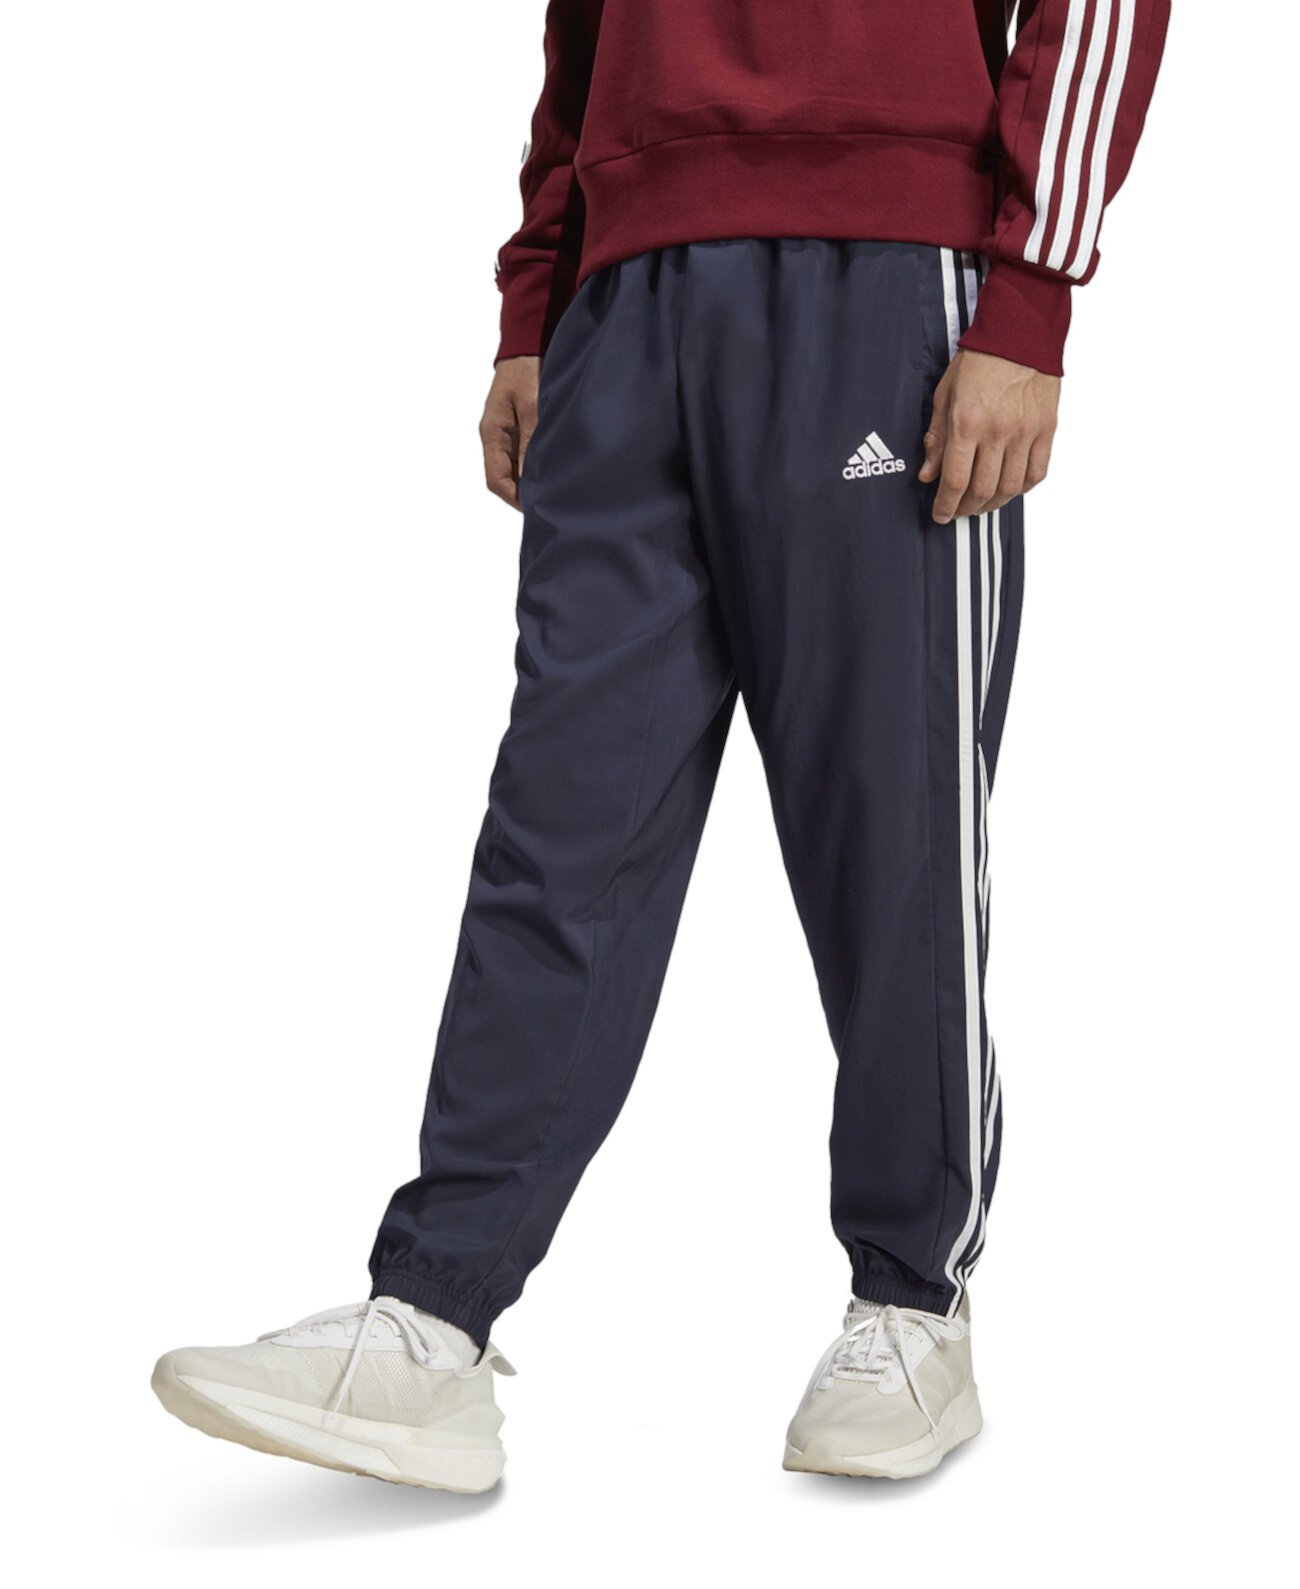 Мужские спортивные брюки AEROREADY Essentials с эластичными манжетами и тремя полосками Adidas